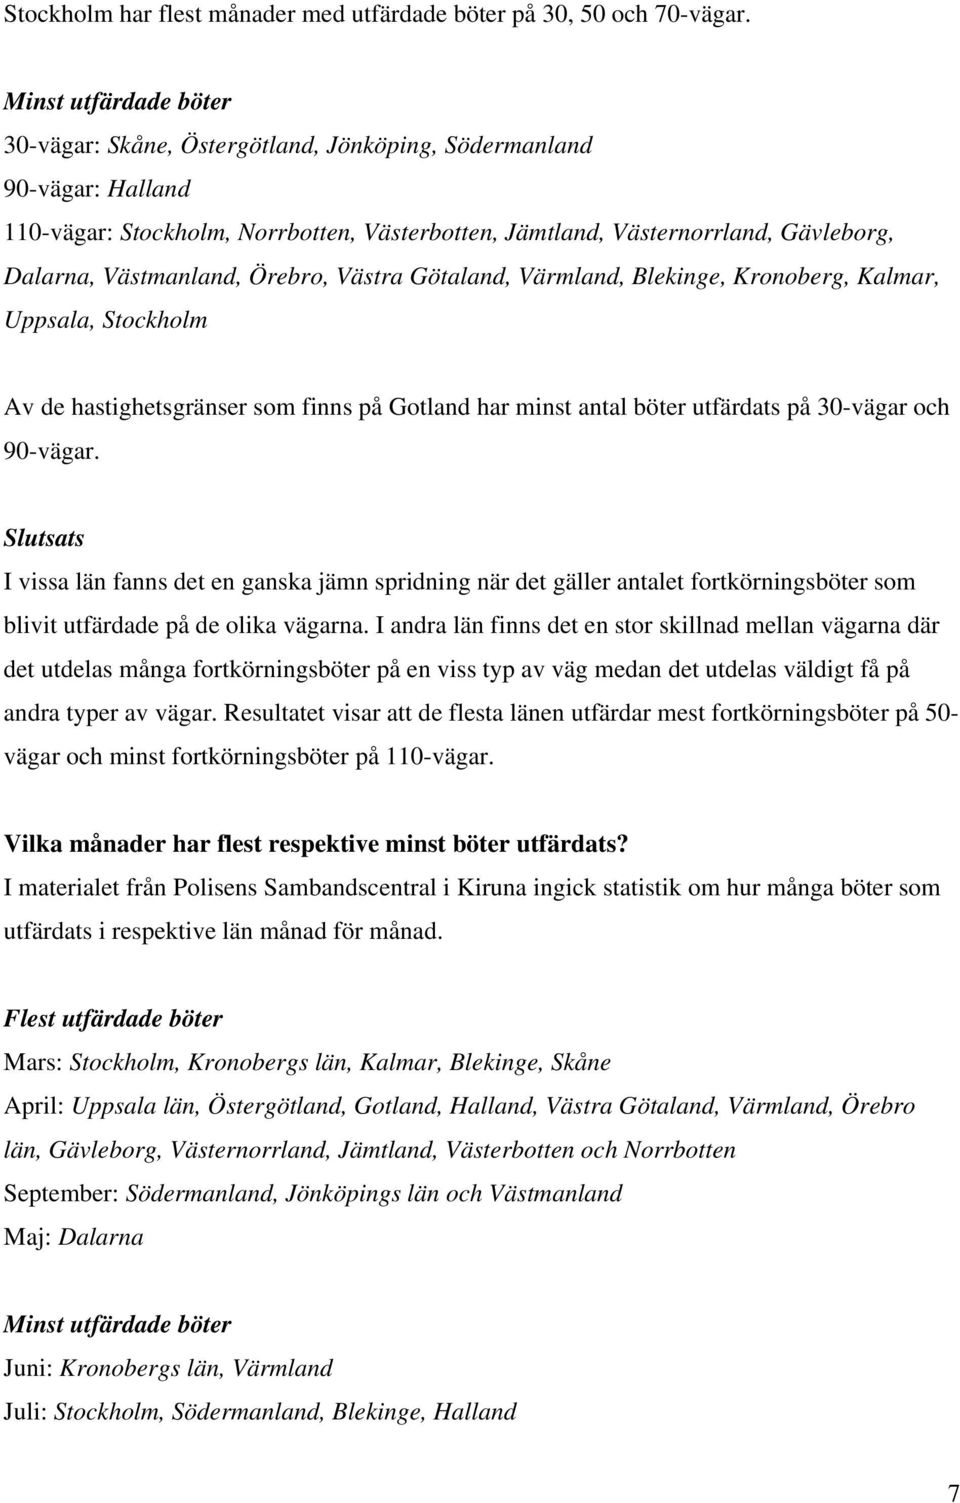 Västmanland, Örebro, Västra Götaland, Värmland, Blekinge, Kronoberg, Kalmar, Uppsala, Stockholm Av de hastighetsgränser som finns på Gotland har minst antal böter utfärdats på 30-vägar och 90-vägar.